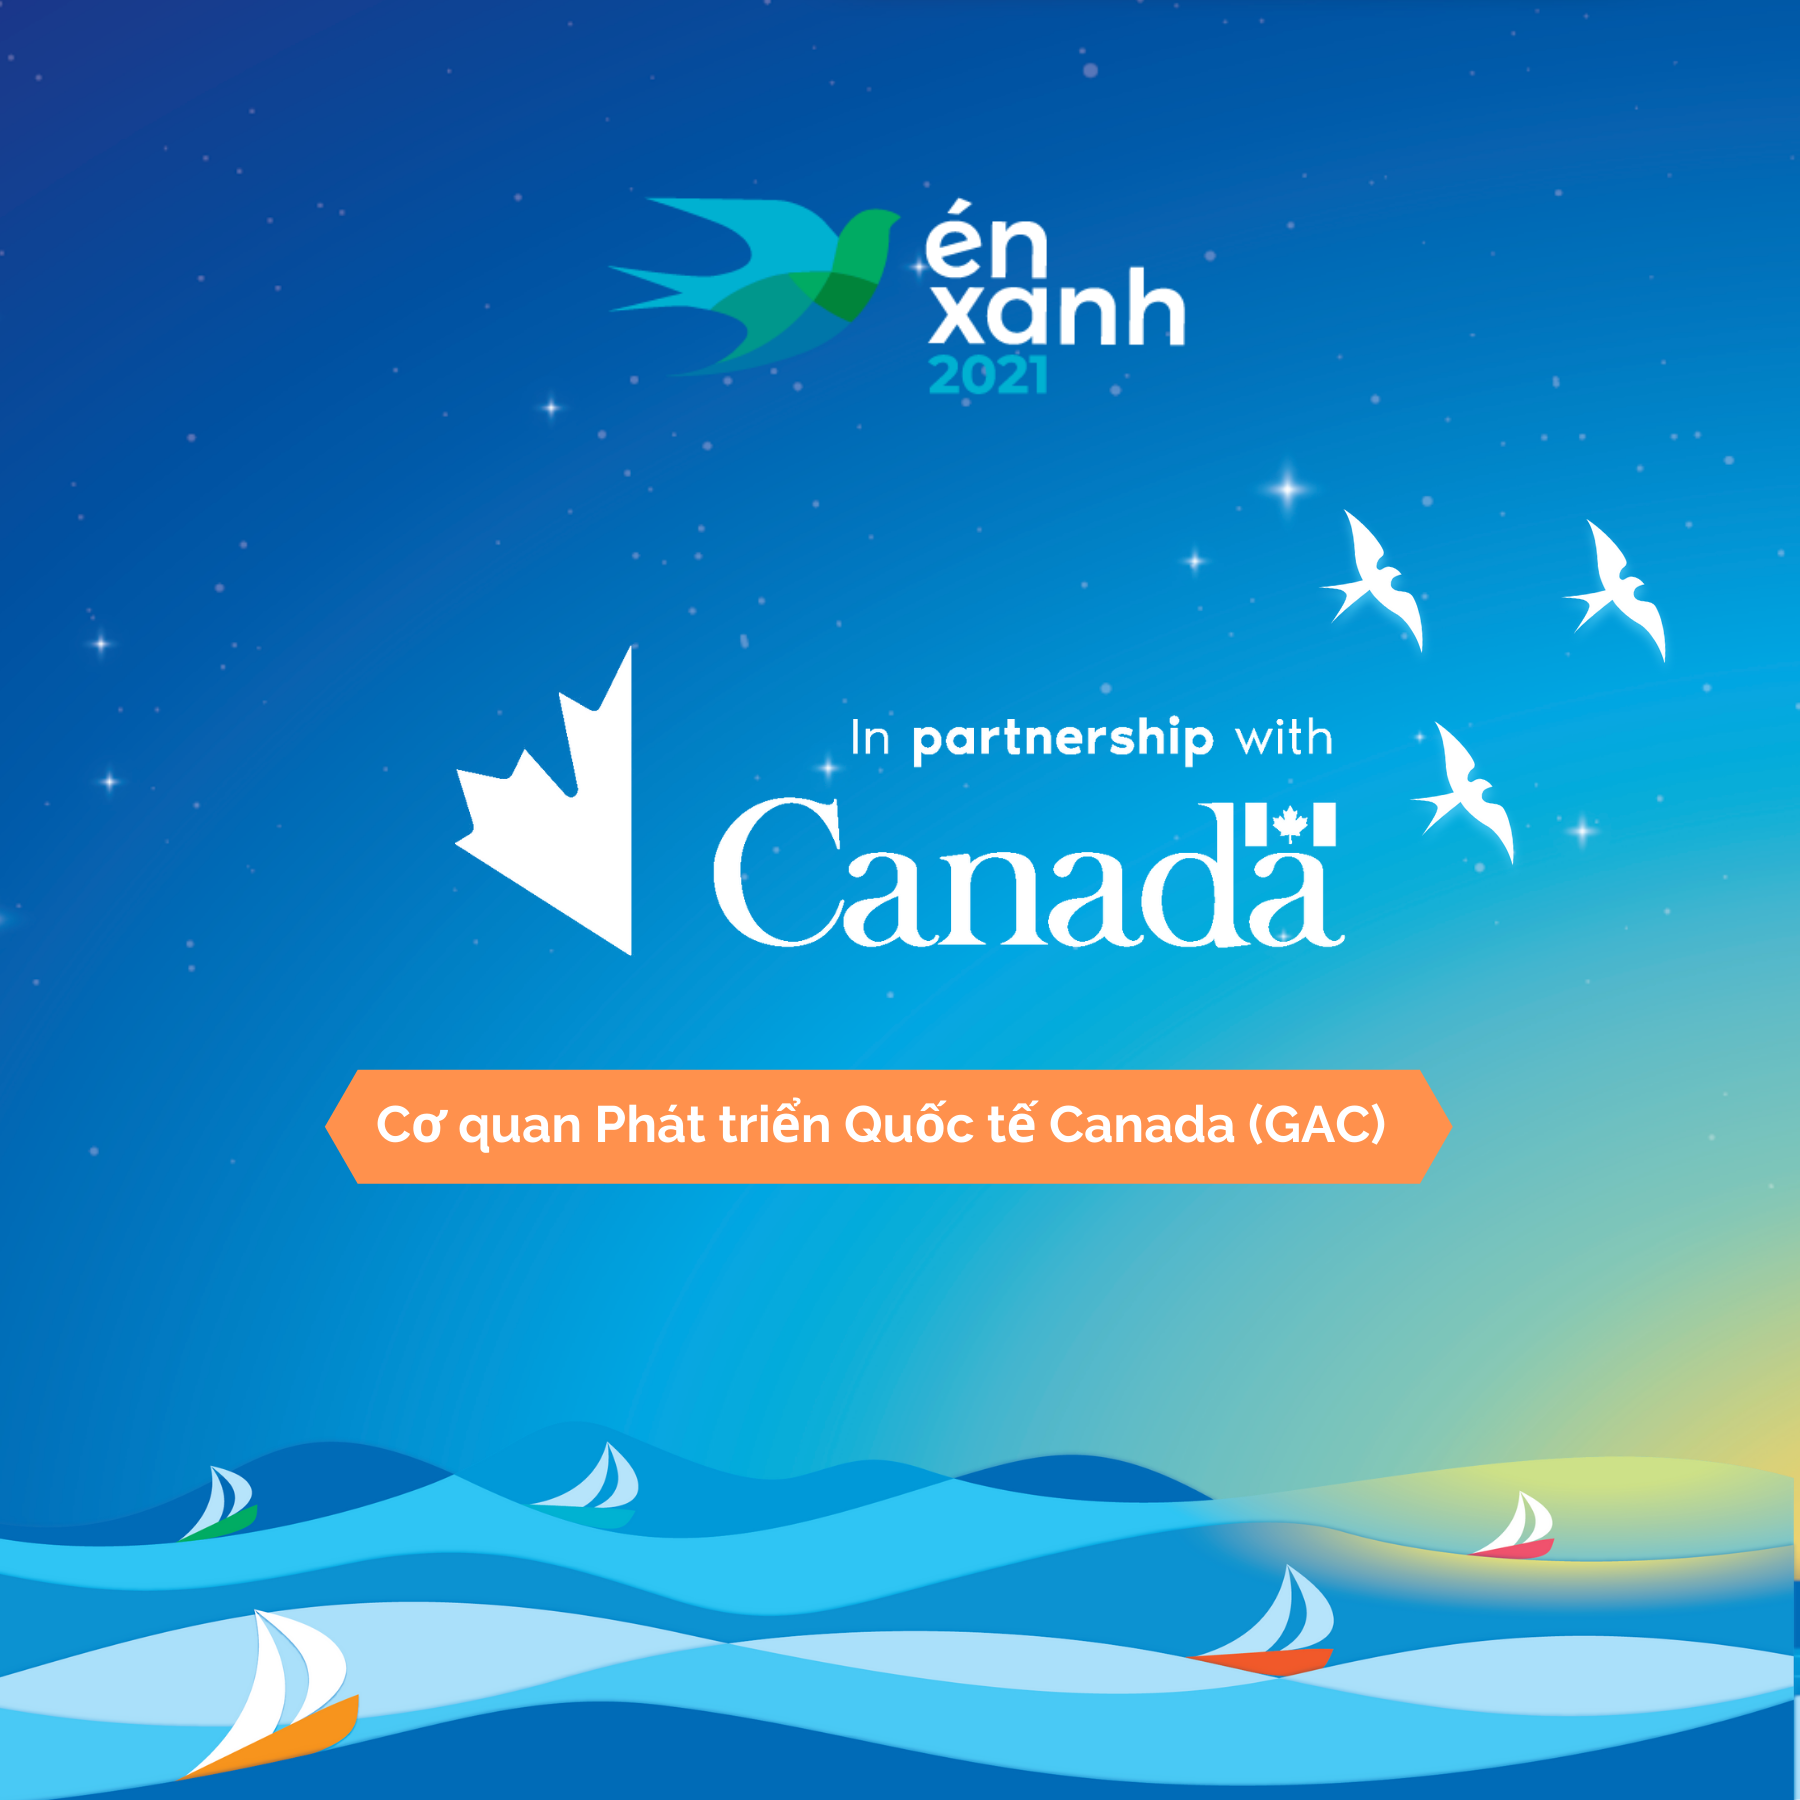 Có thể là hình ảnh về văn bản cho biết 'én xanh 2021 In partnership with Canada Cơ quan Phát triển Quố‘c tế Canada (GAC)'